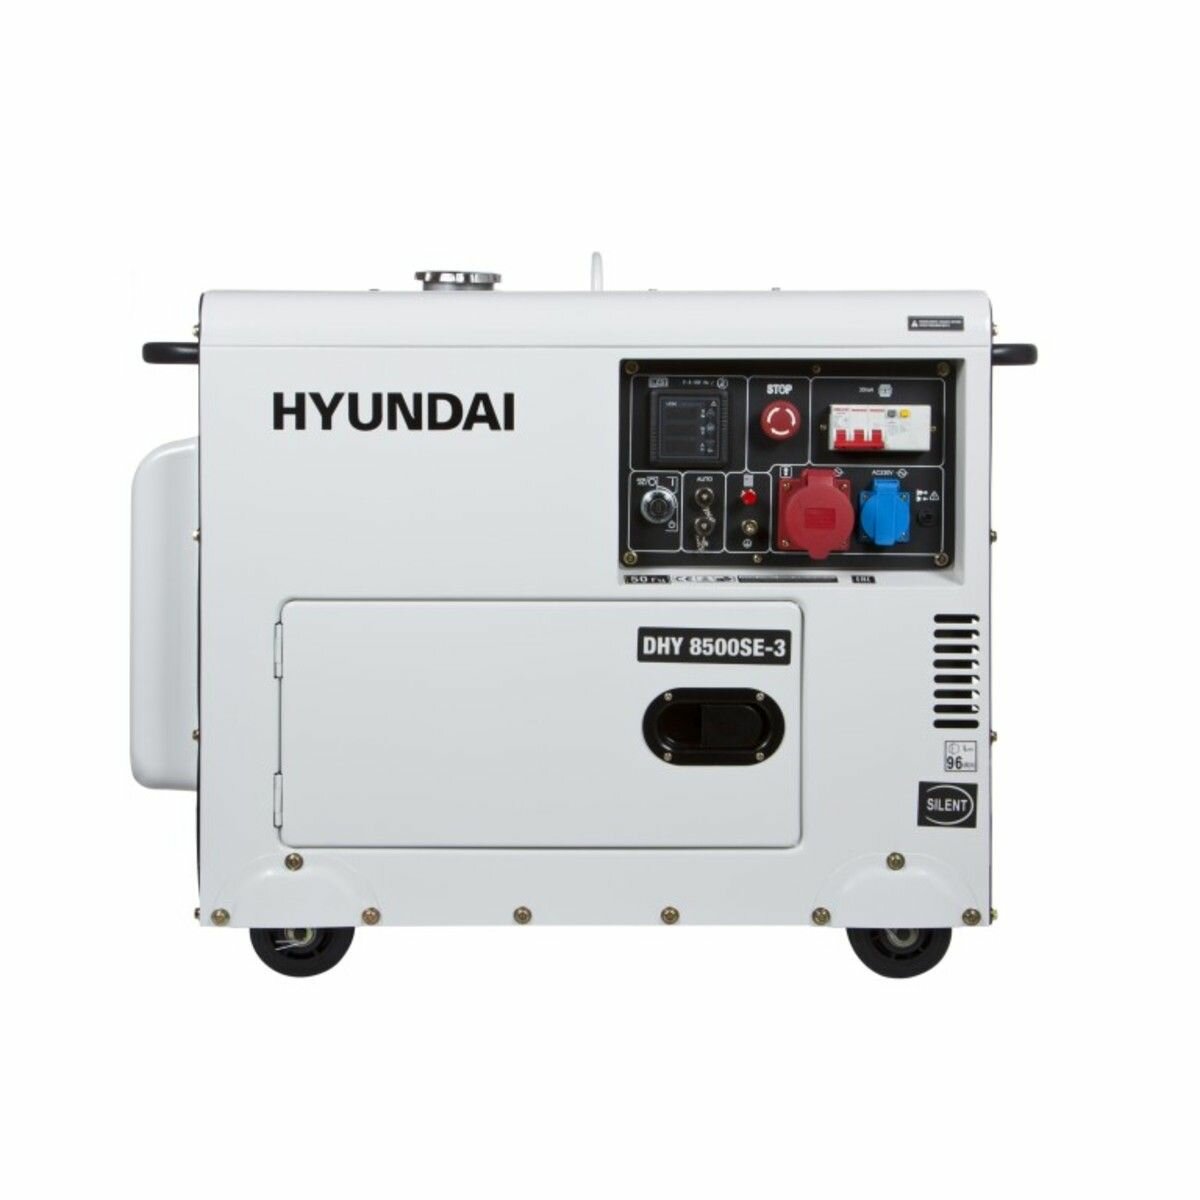 Дизельный генератор HYUNDAI DHY 8500SE-3 7.2 кВт / электростанция с электрическим запуском двигателя и автоматическим регулятором напряжения 169кг